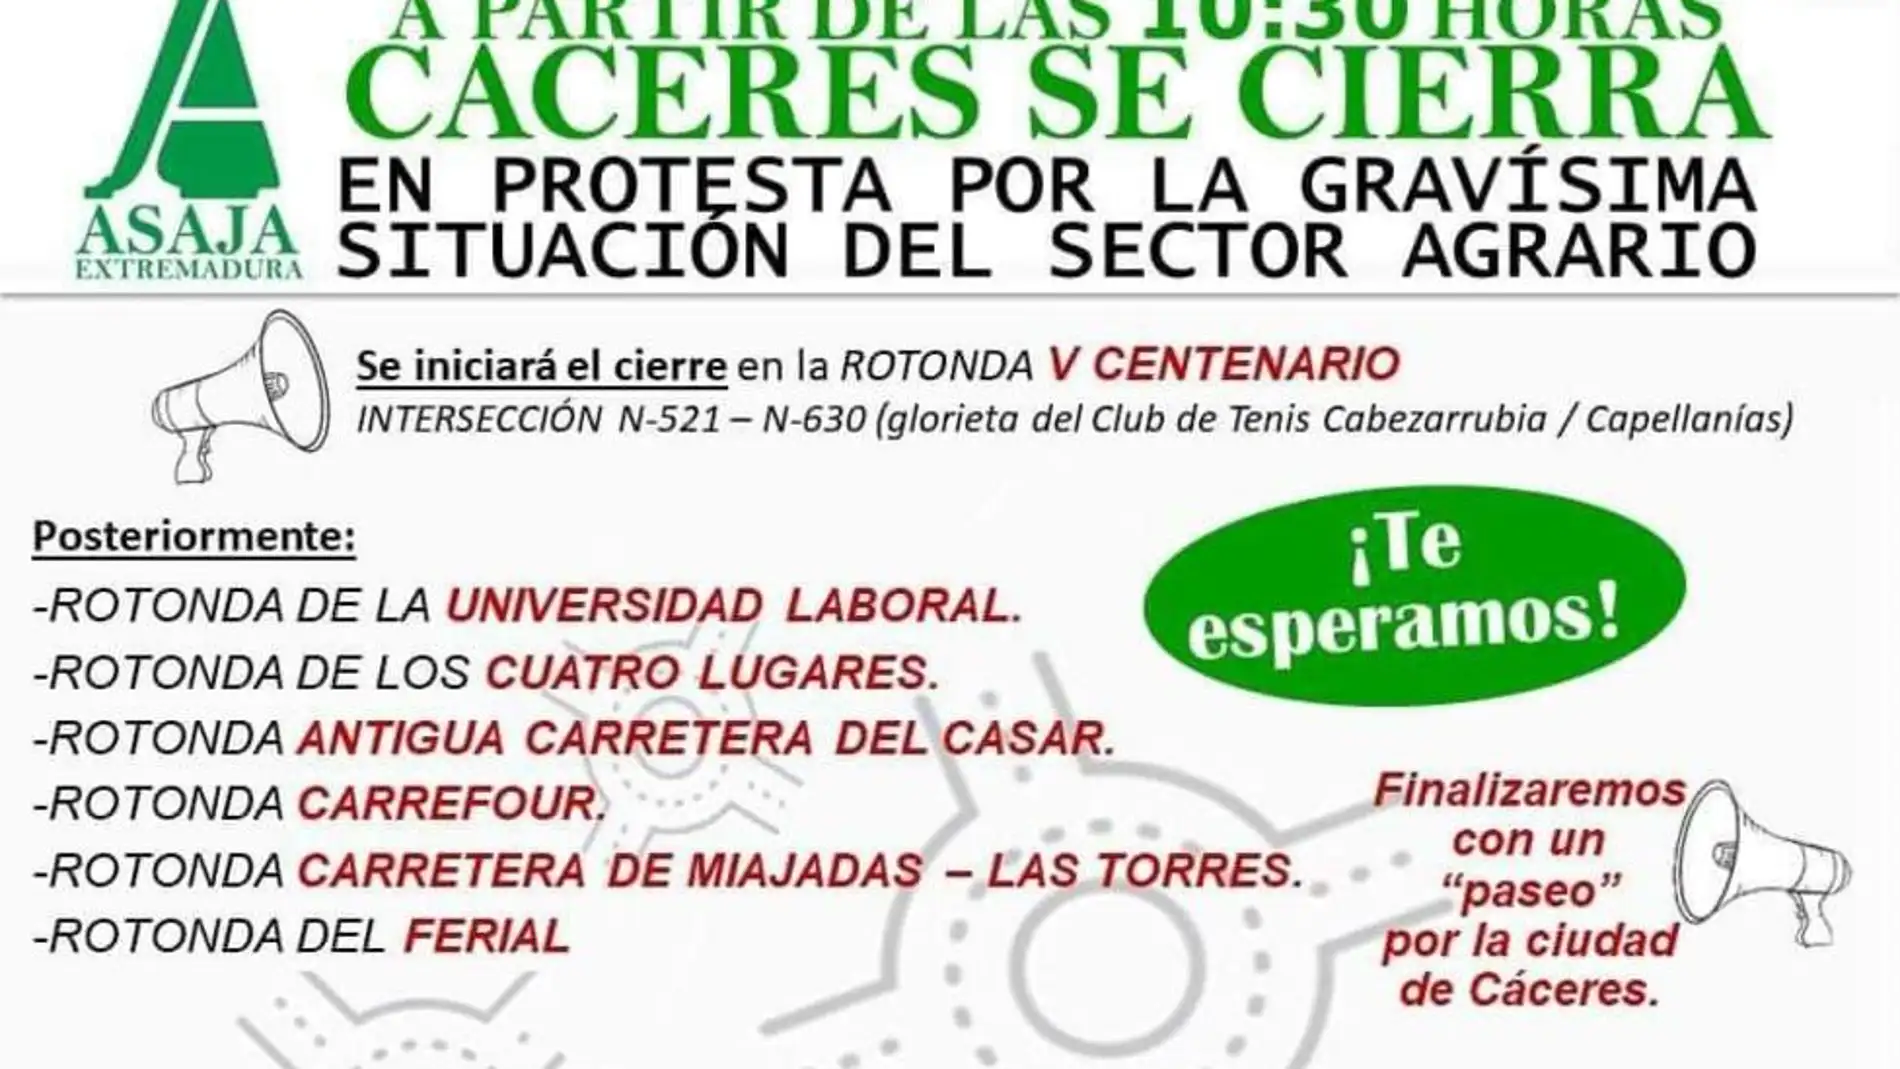 "Enjaular" Cáceres, manifestaciones en Badajoz, Plasencia y Coria, cortes de carreteras y tractores en Madrid: El miércoles agrario